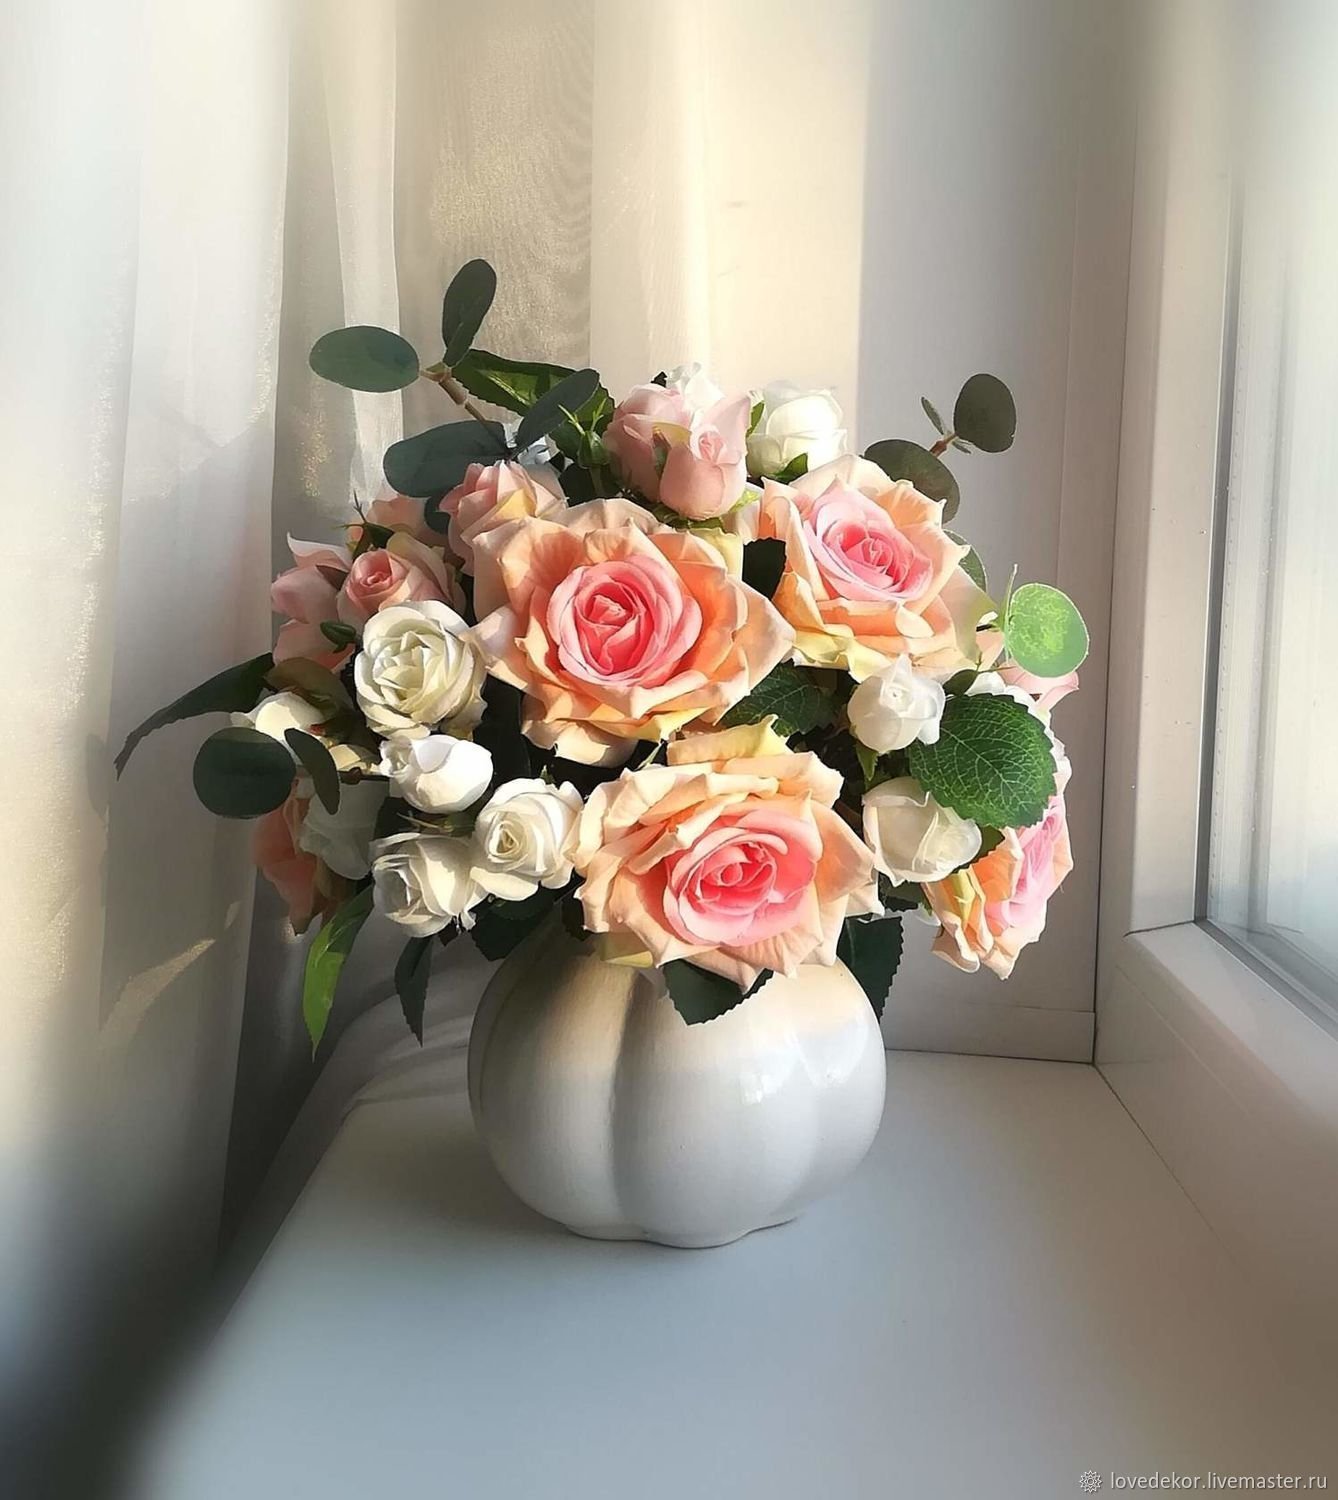 Букеты роз в вазе на столе. Цветы в вазе. Букеты в вазах. Цветочки в вазе. Изысканные букеты.